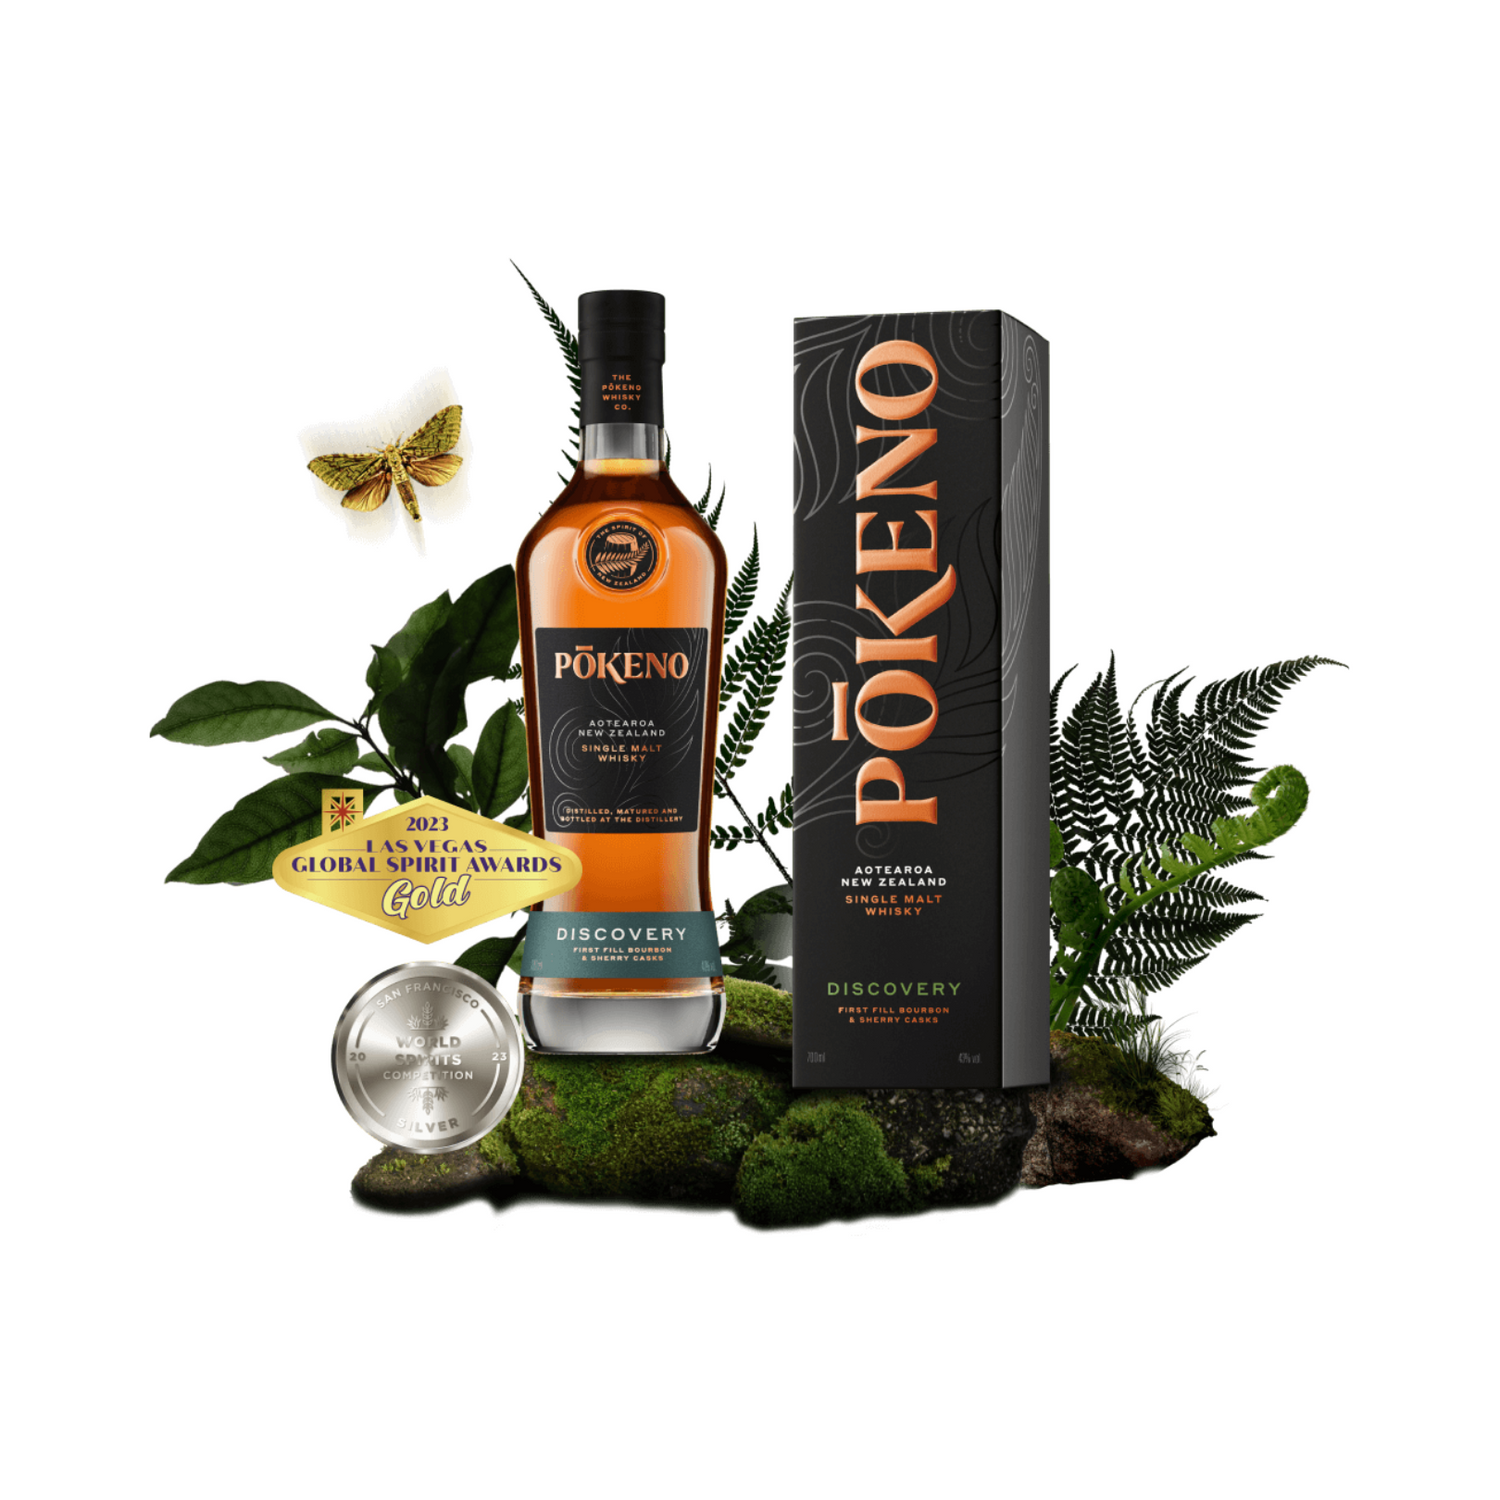 Pōkeno 'DISCOVERY' New Zealand Single Malt Whisky